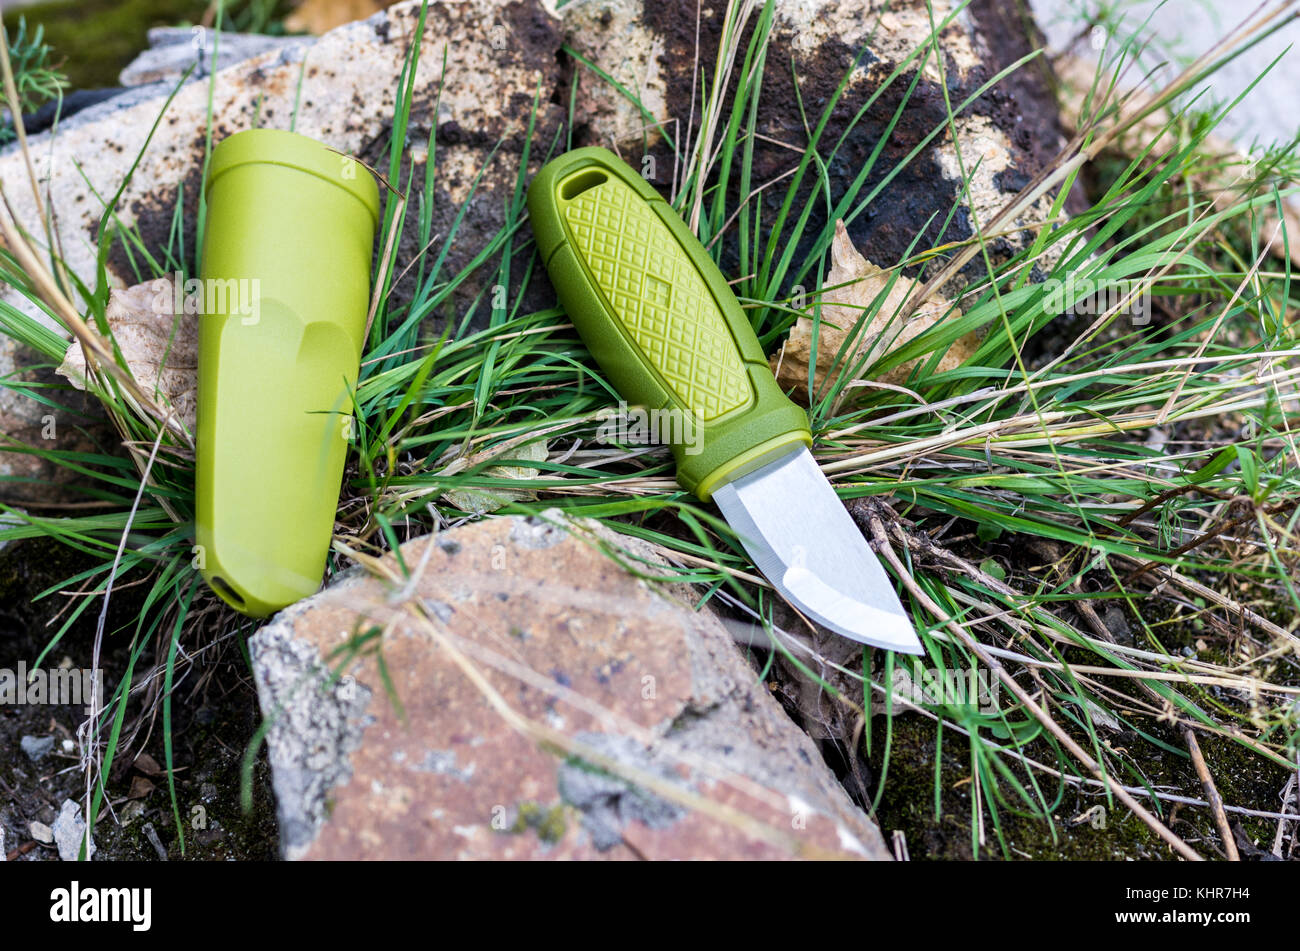 Un couteau avec une poignée verte. Couteau et gaine plastique. Photo d'extérieur. Banque D'Images